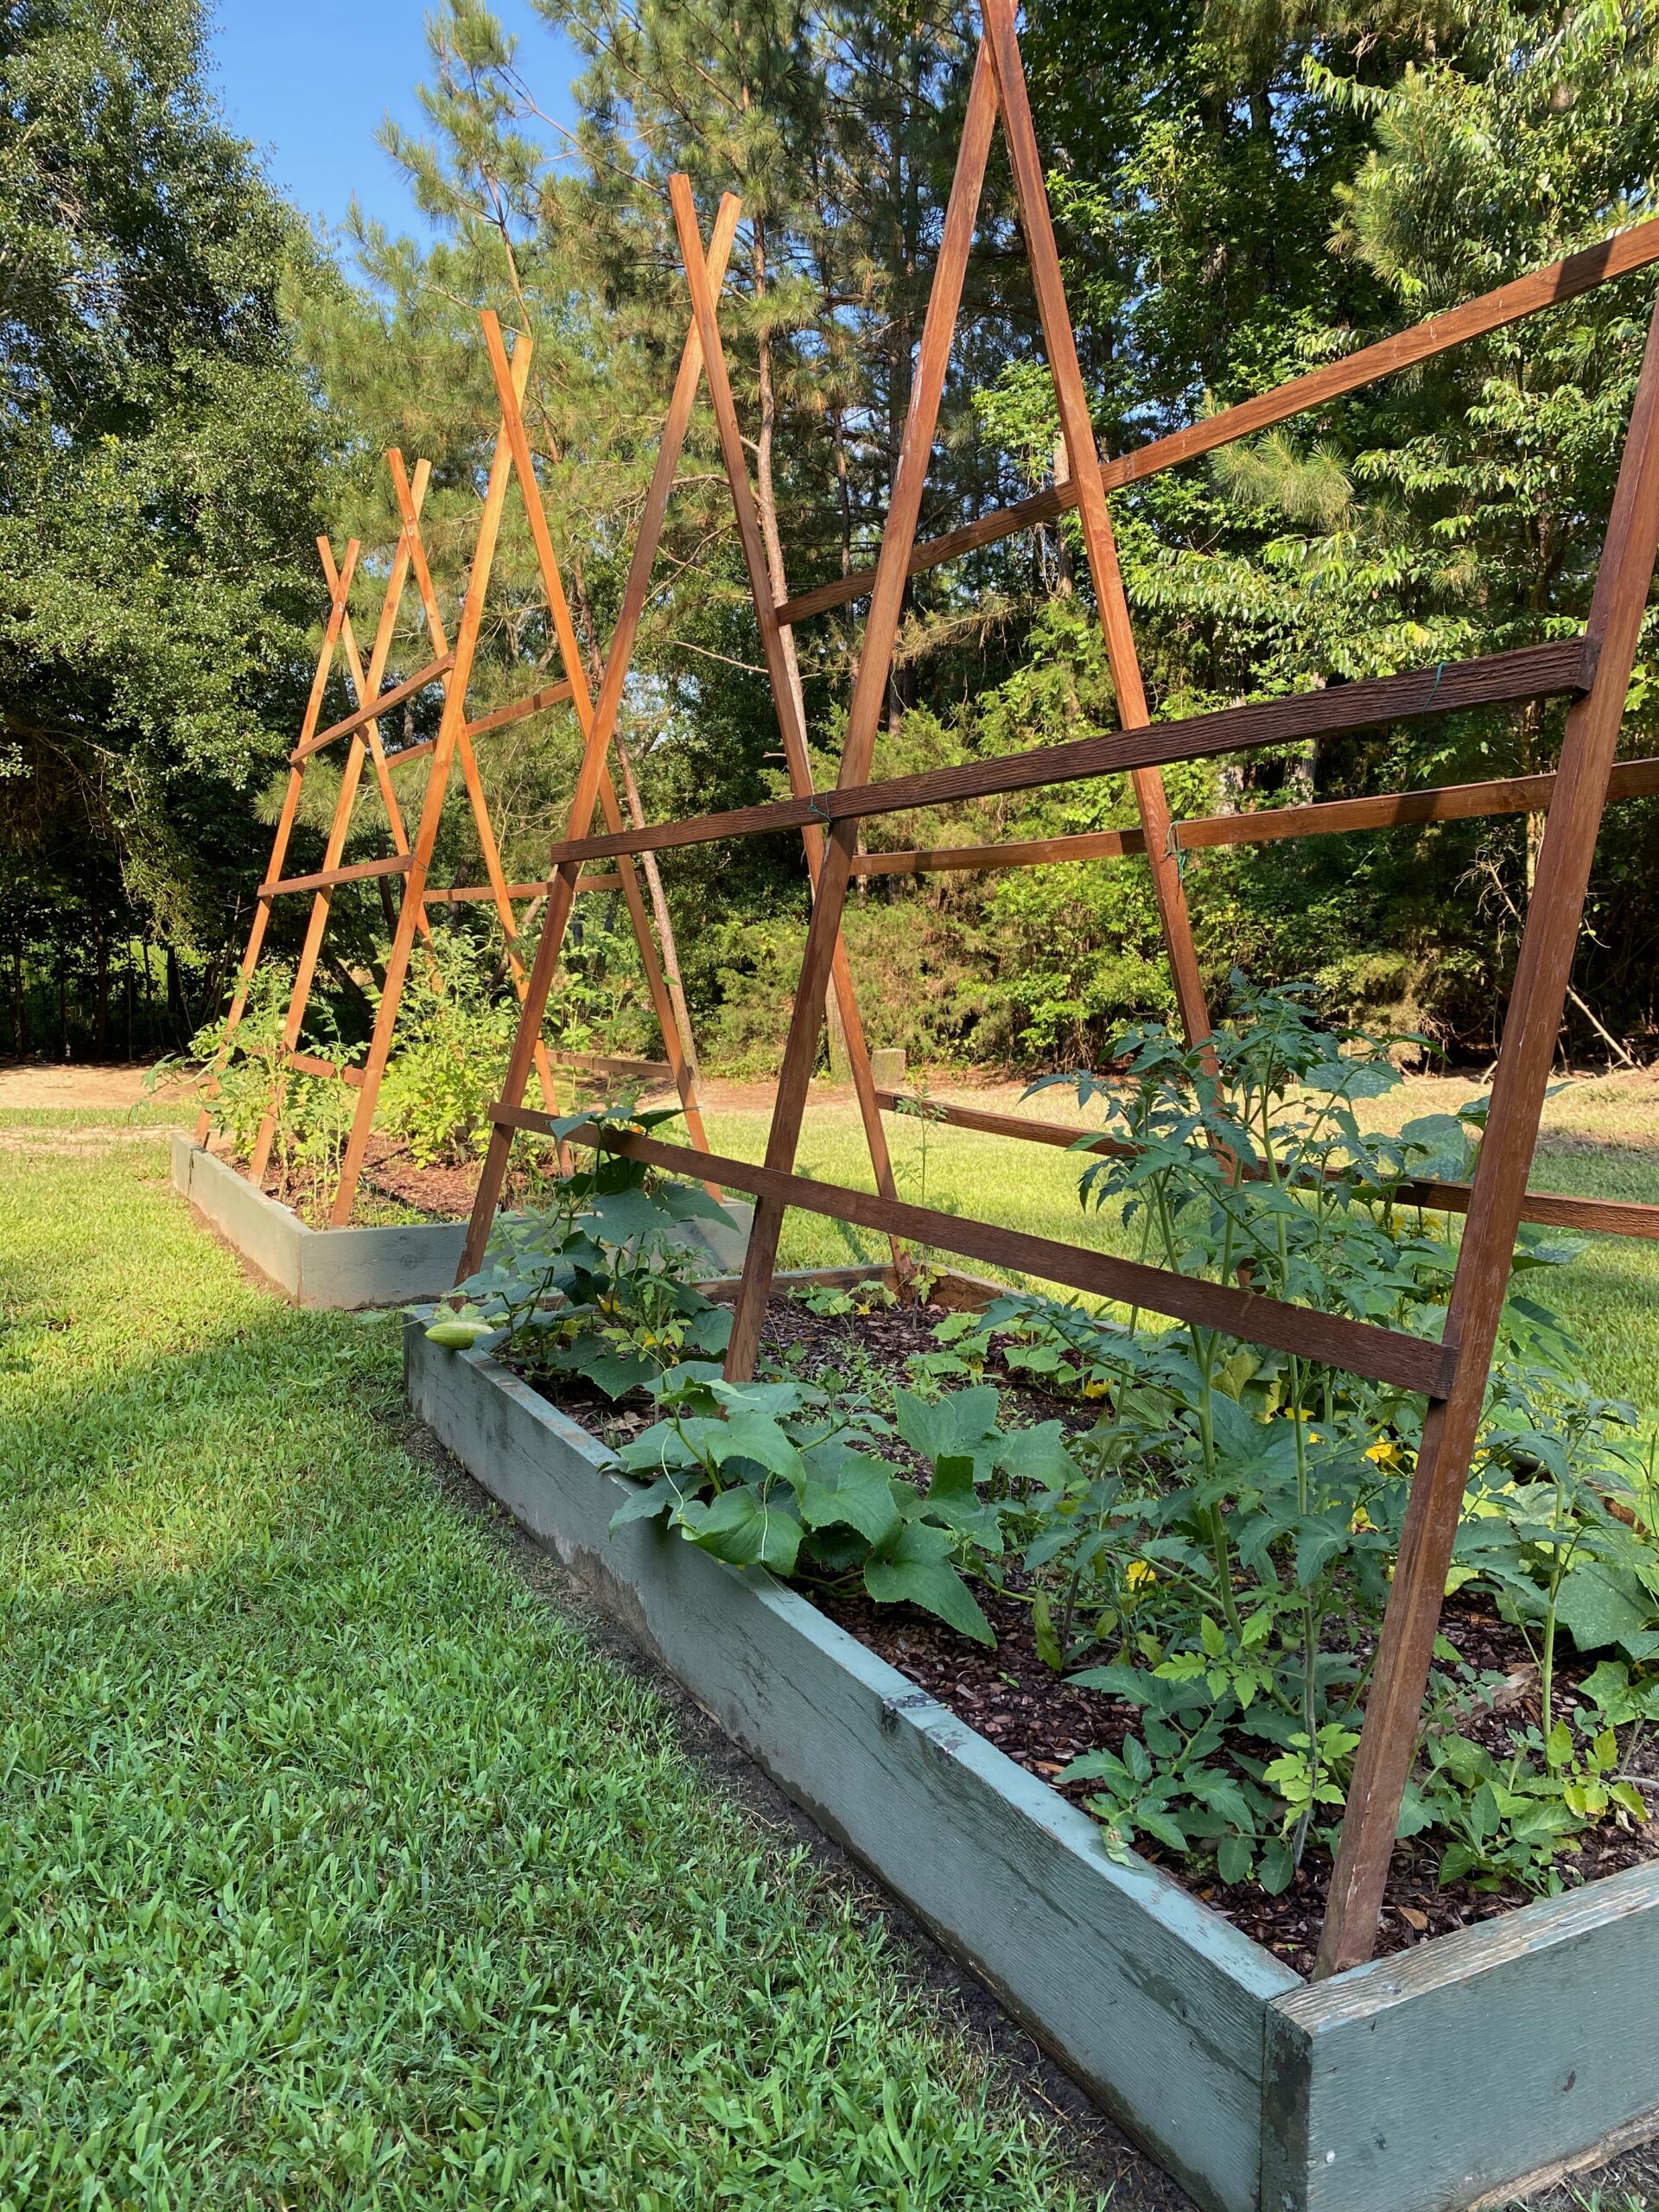 A Simple Backyard Potager-Style Garden